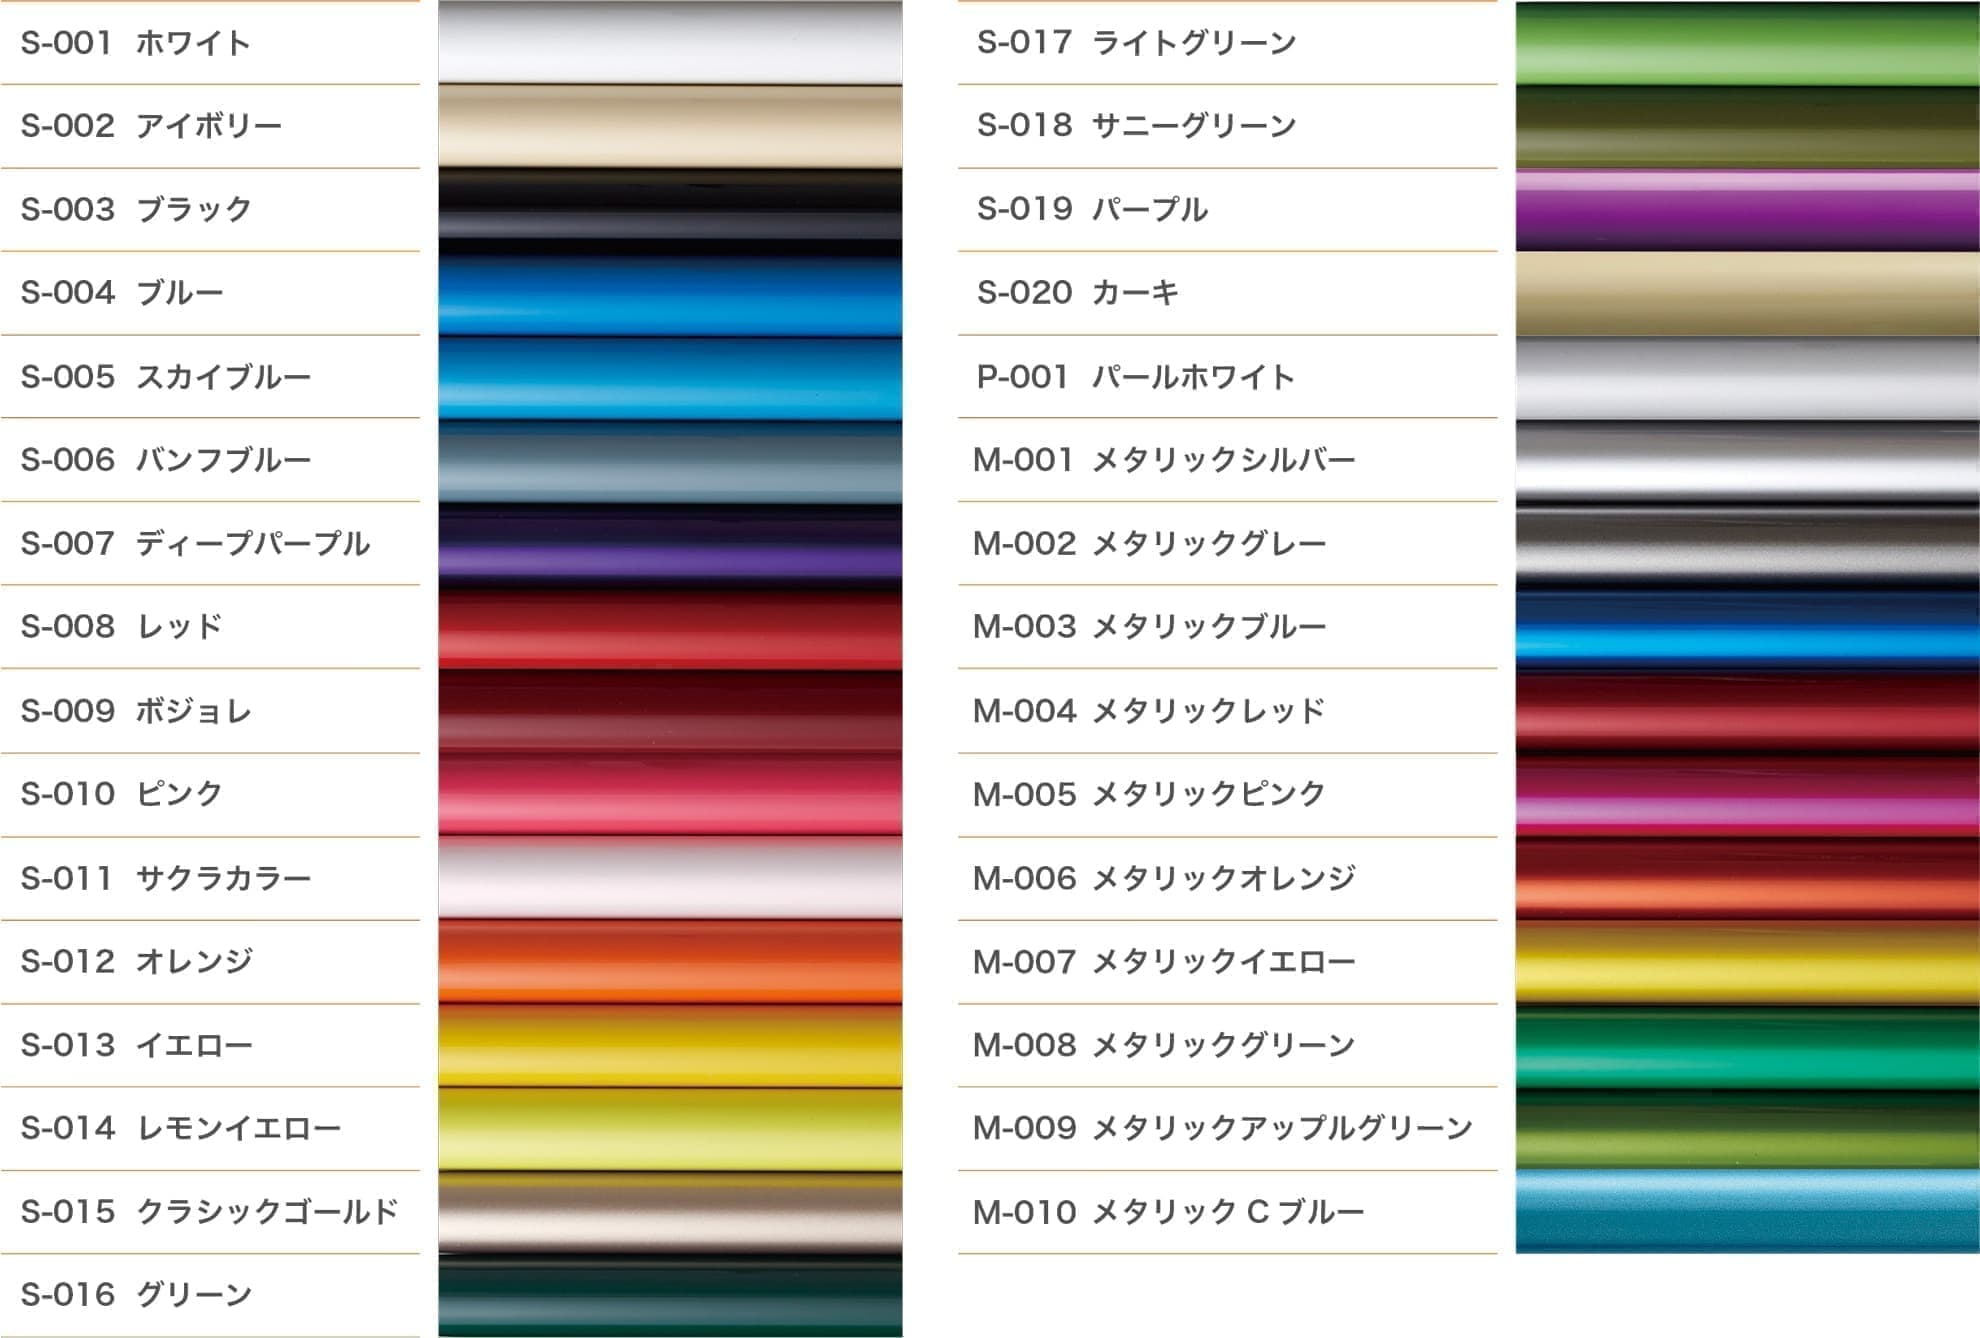 全31色からなるカラーチャート